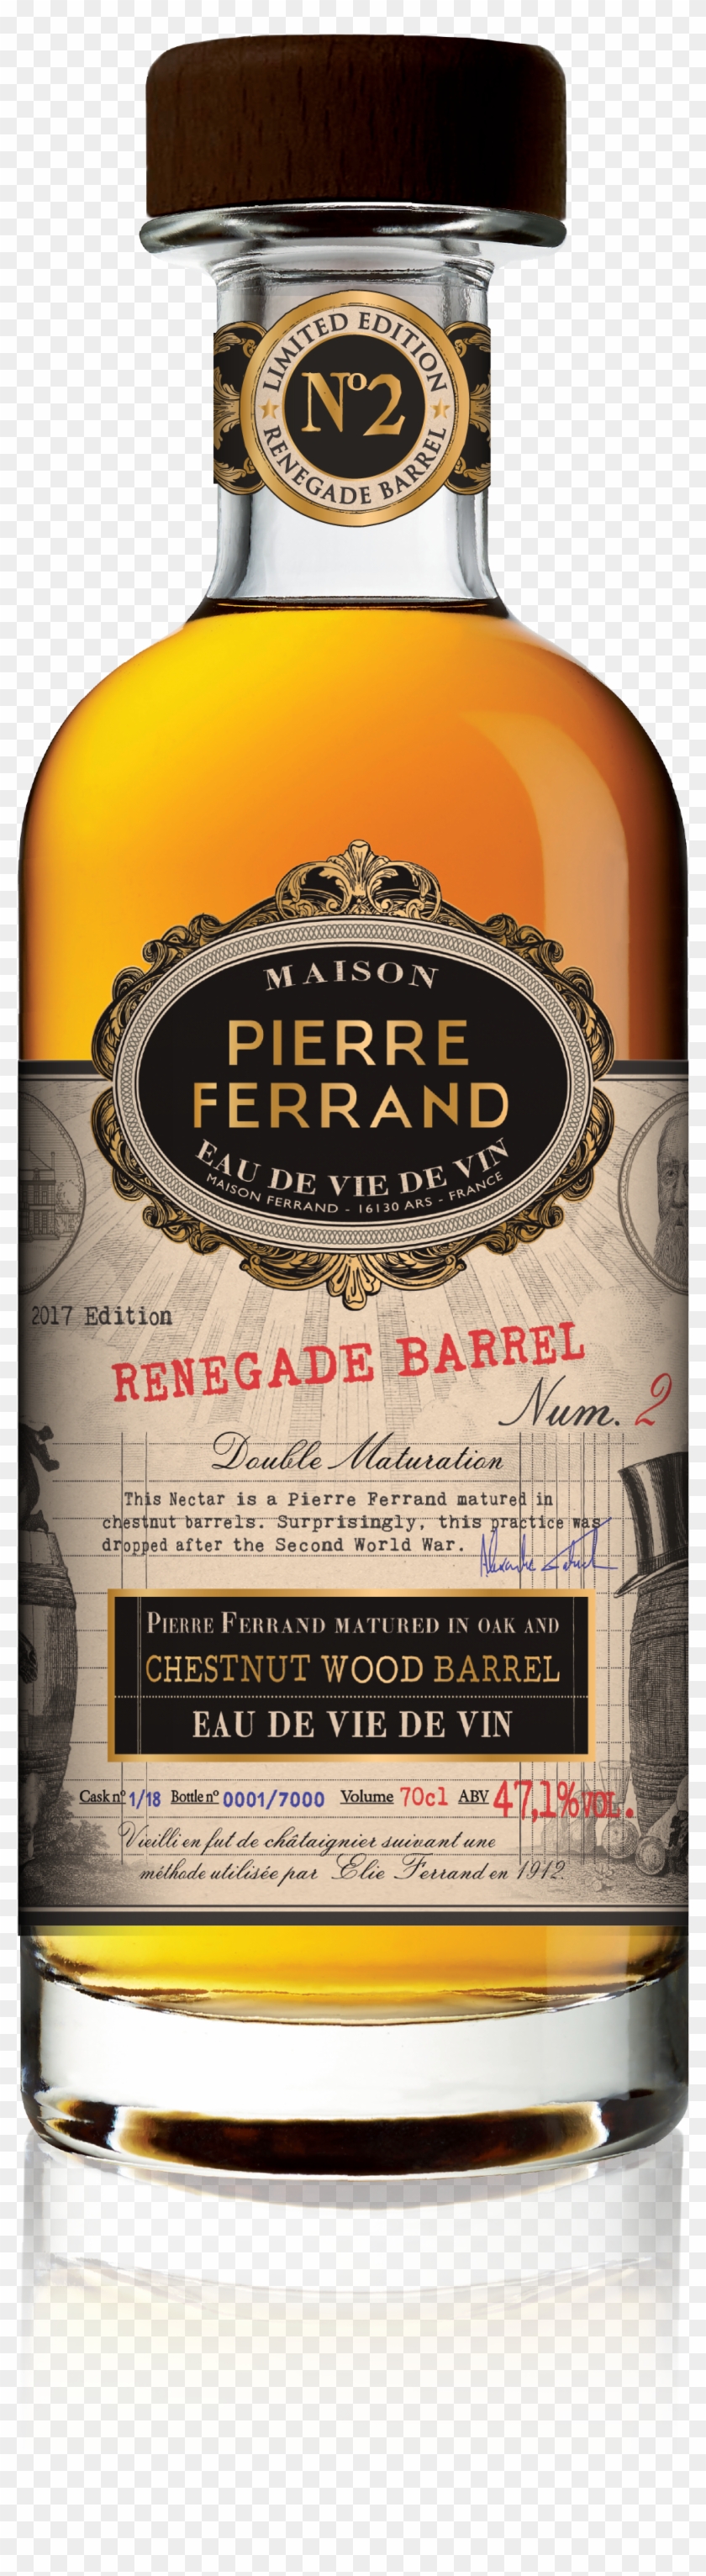 Maison Ferrand Pierre Cognac Spirits And Ligueurs Clipart #2289183